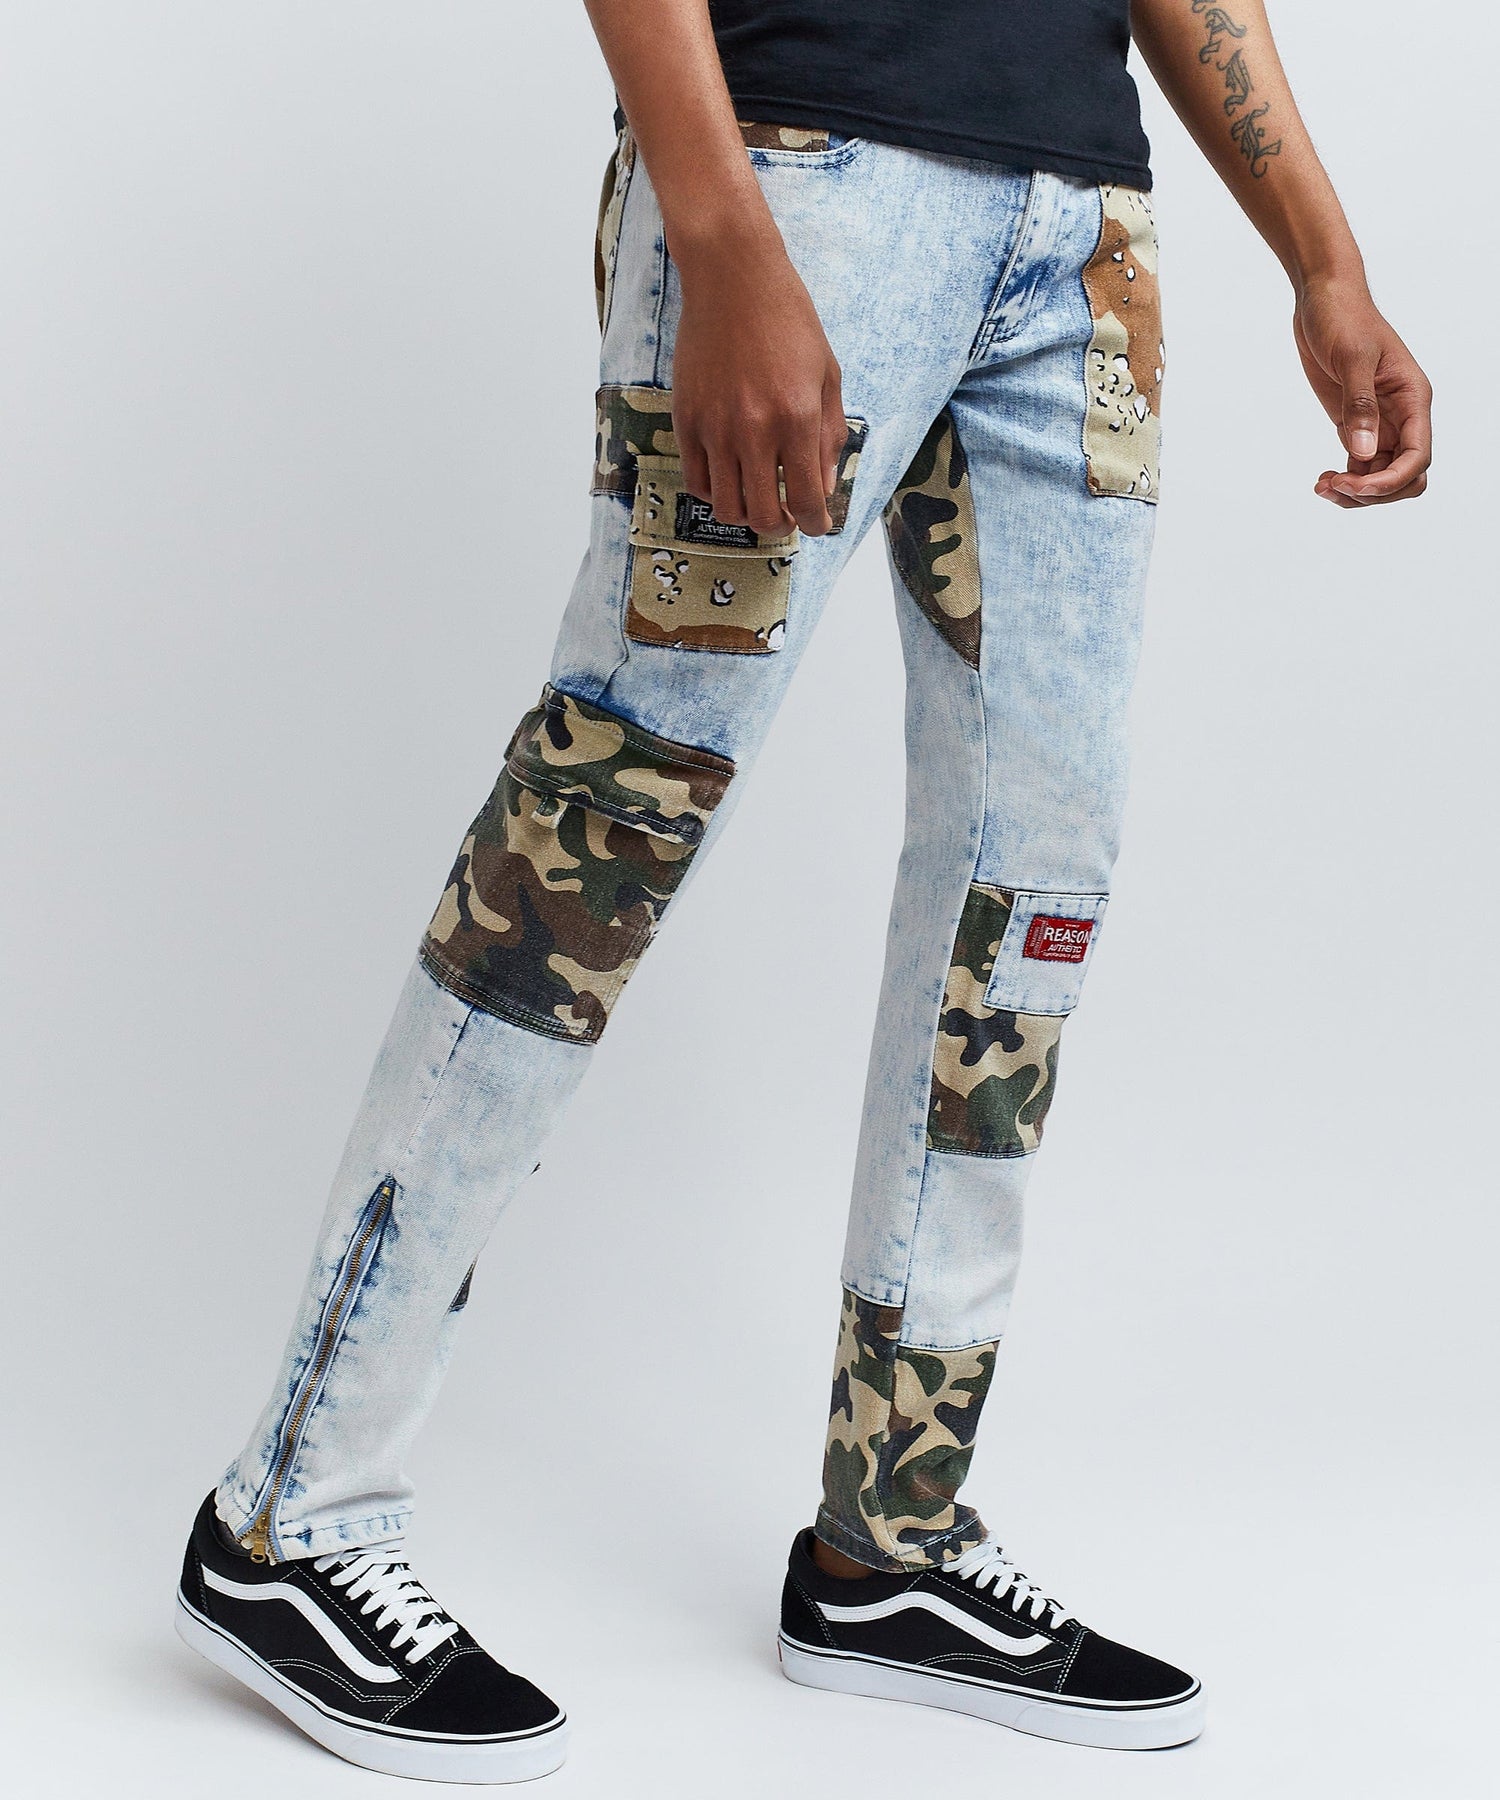 Reason Men's Camo Patchwork Jeans